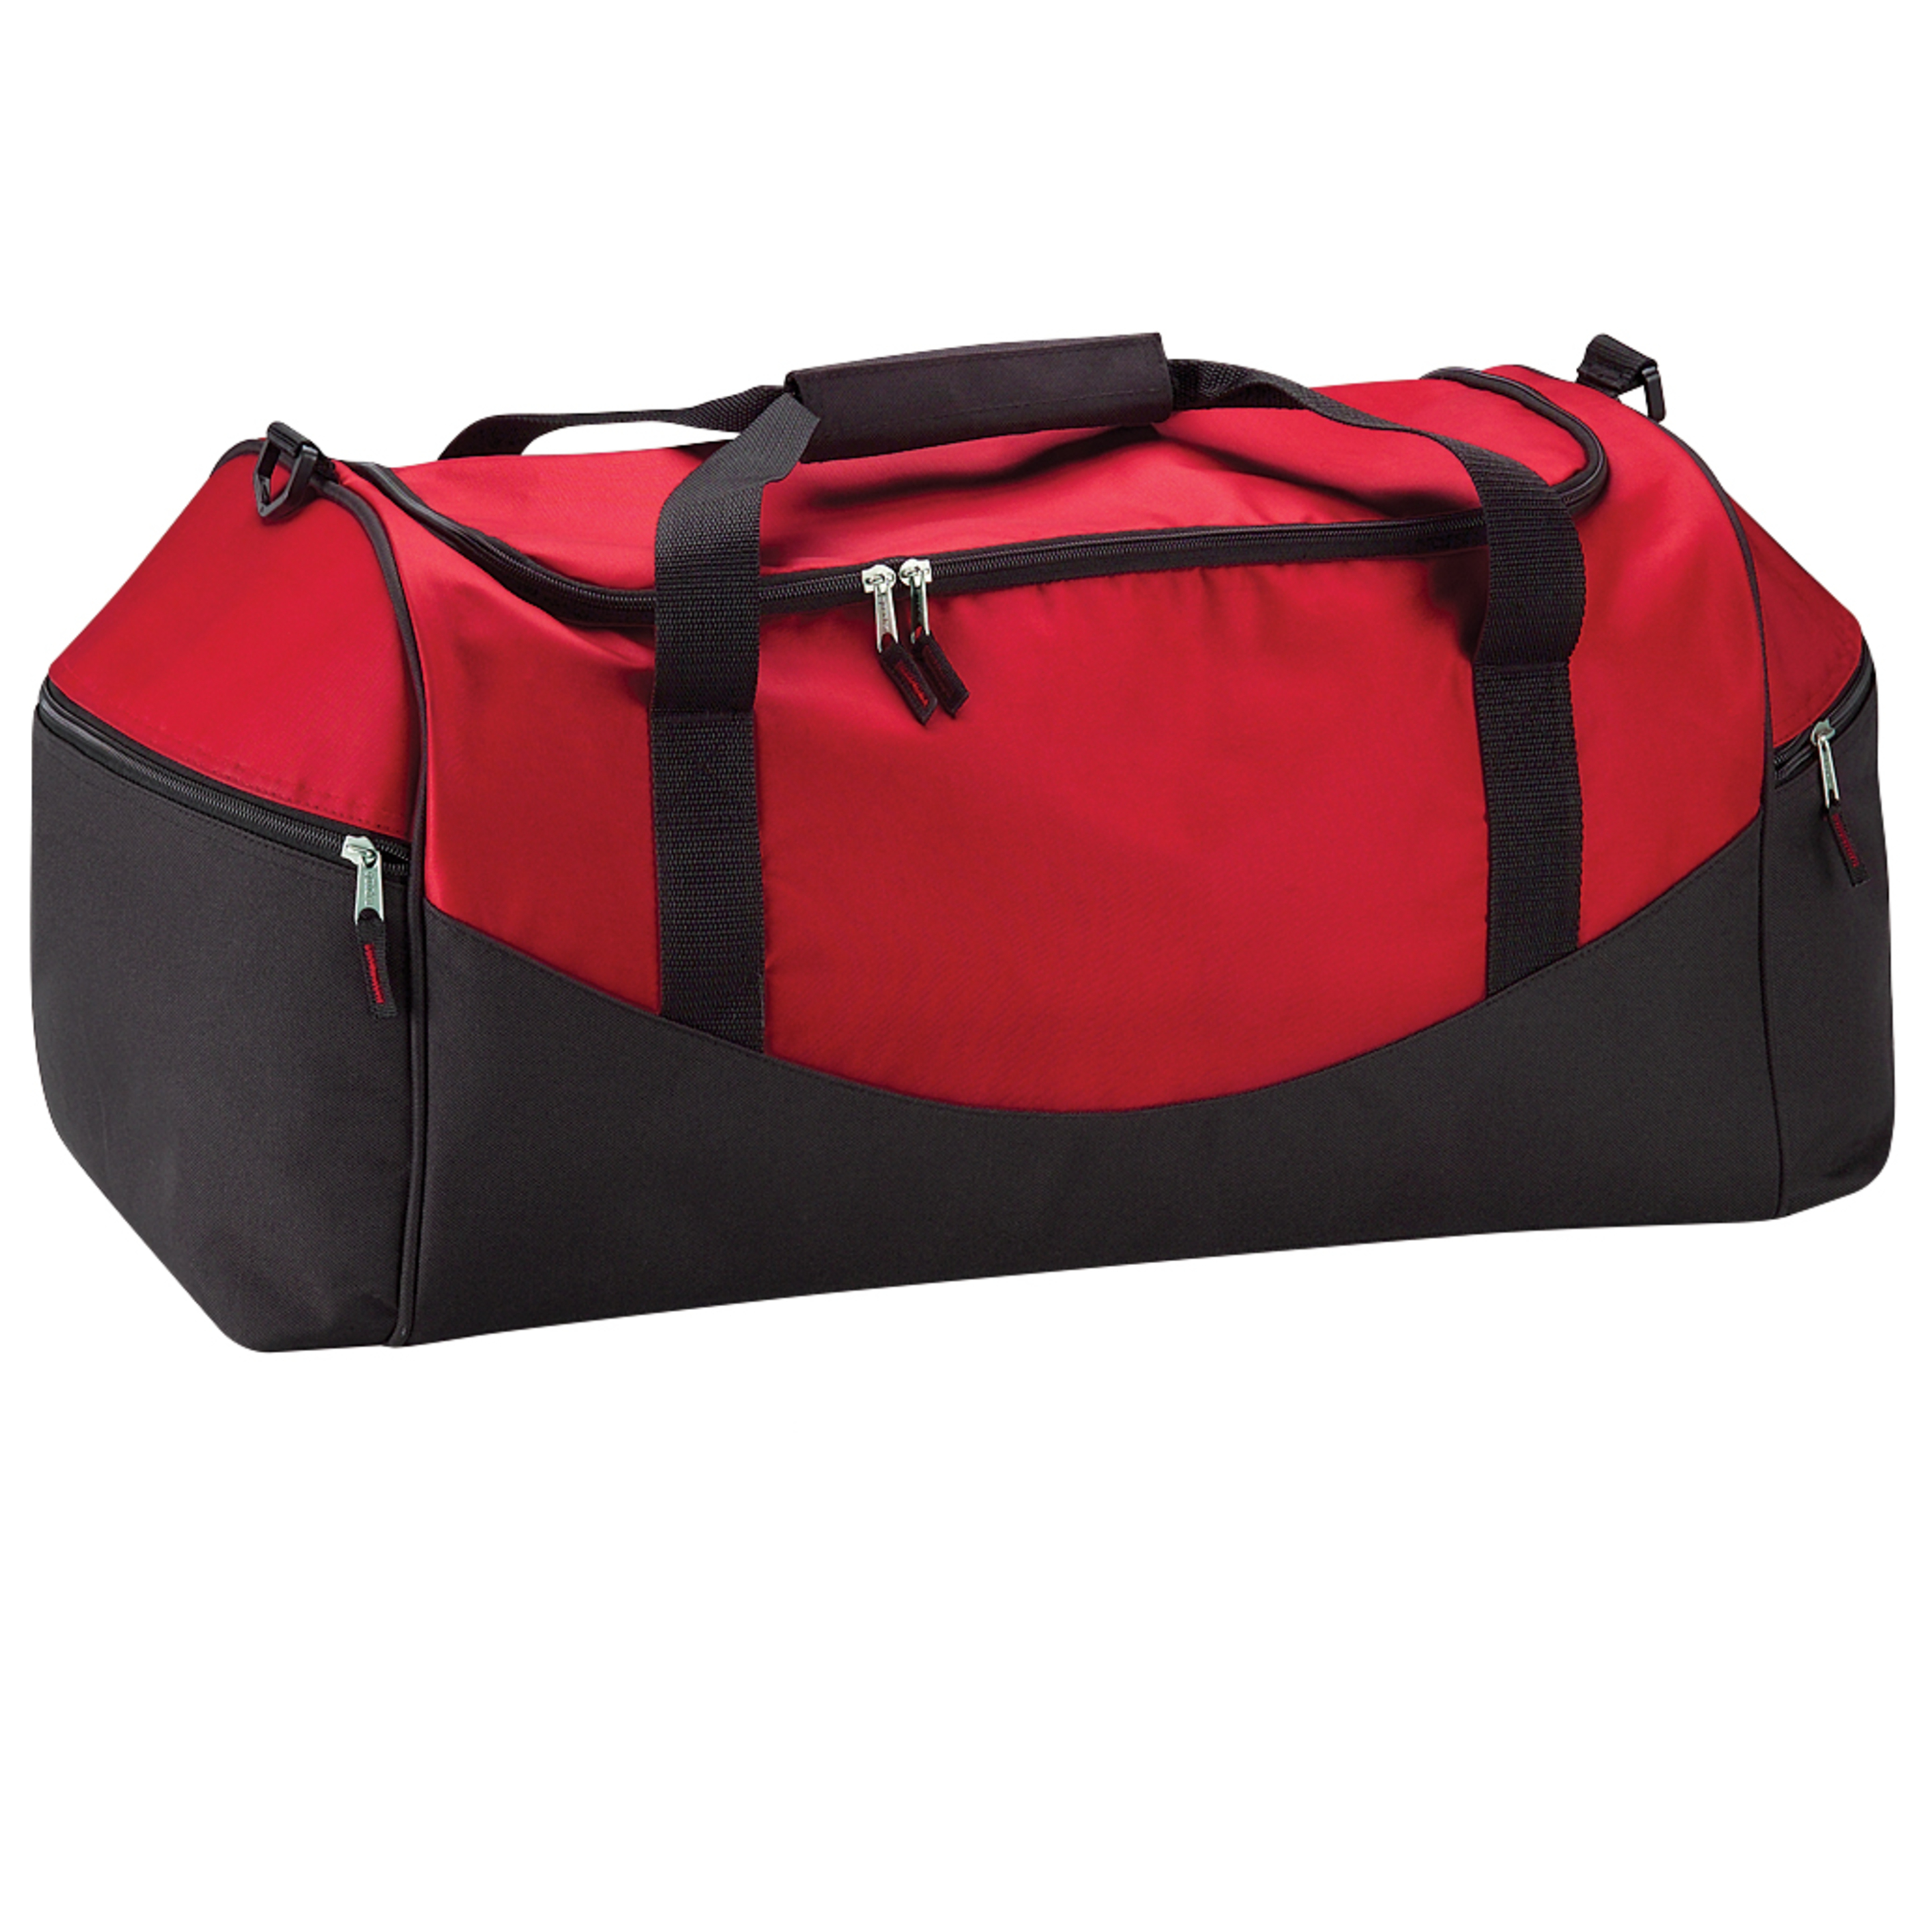 Bolsa De Deporte / Viaje Modelo Teamwear 55 Litros (paquete De 2) Quadra - rojo - 